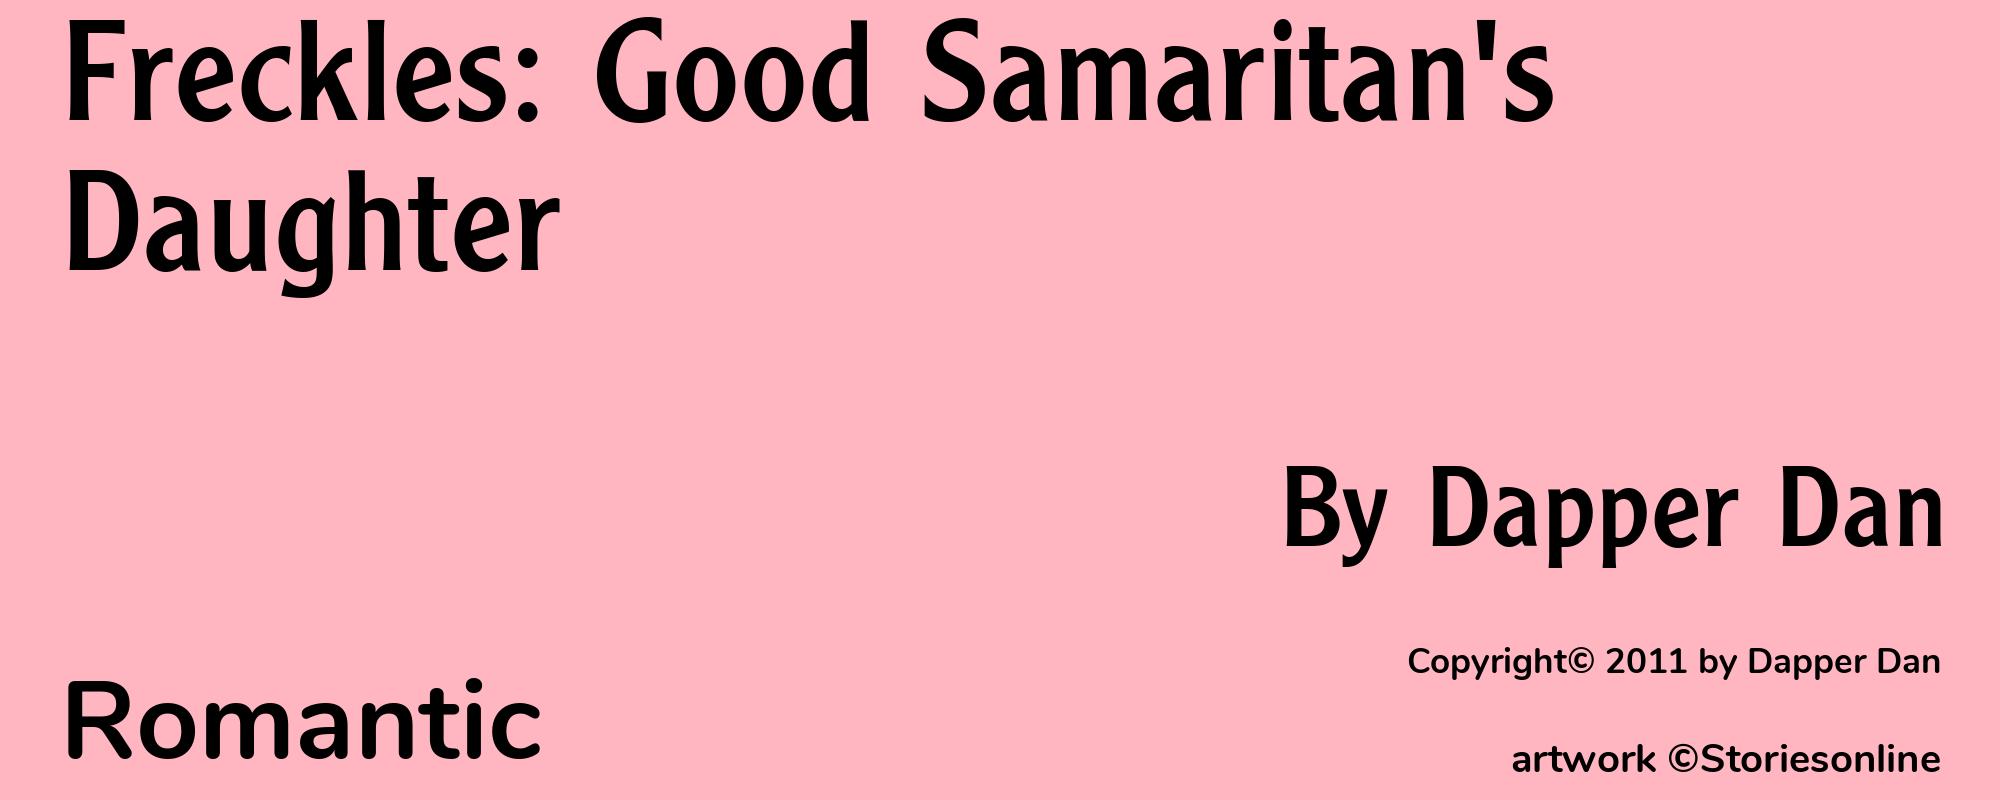 Freckles: Good Samaritan's Daughter - Cover